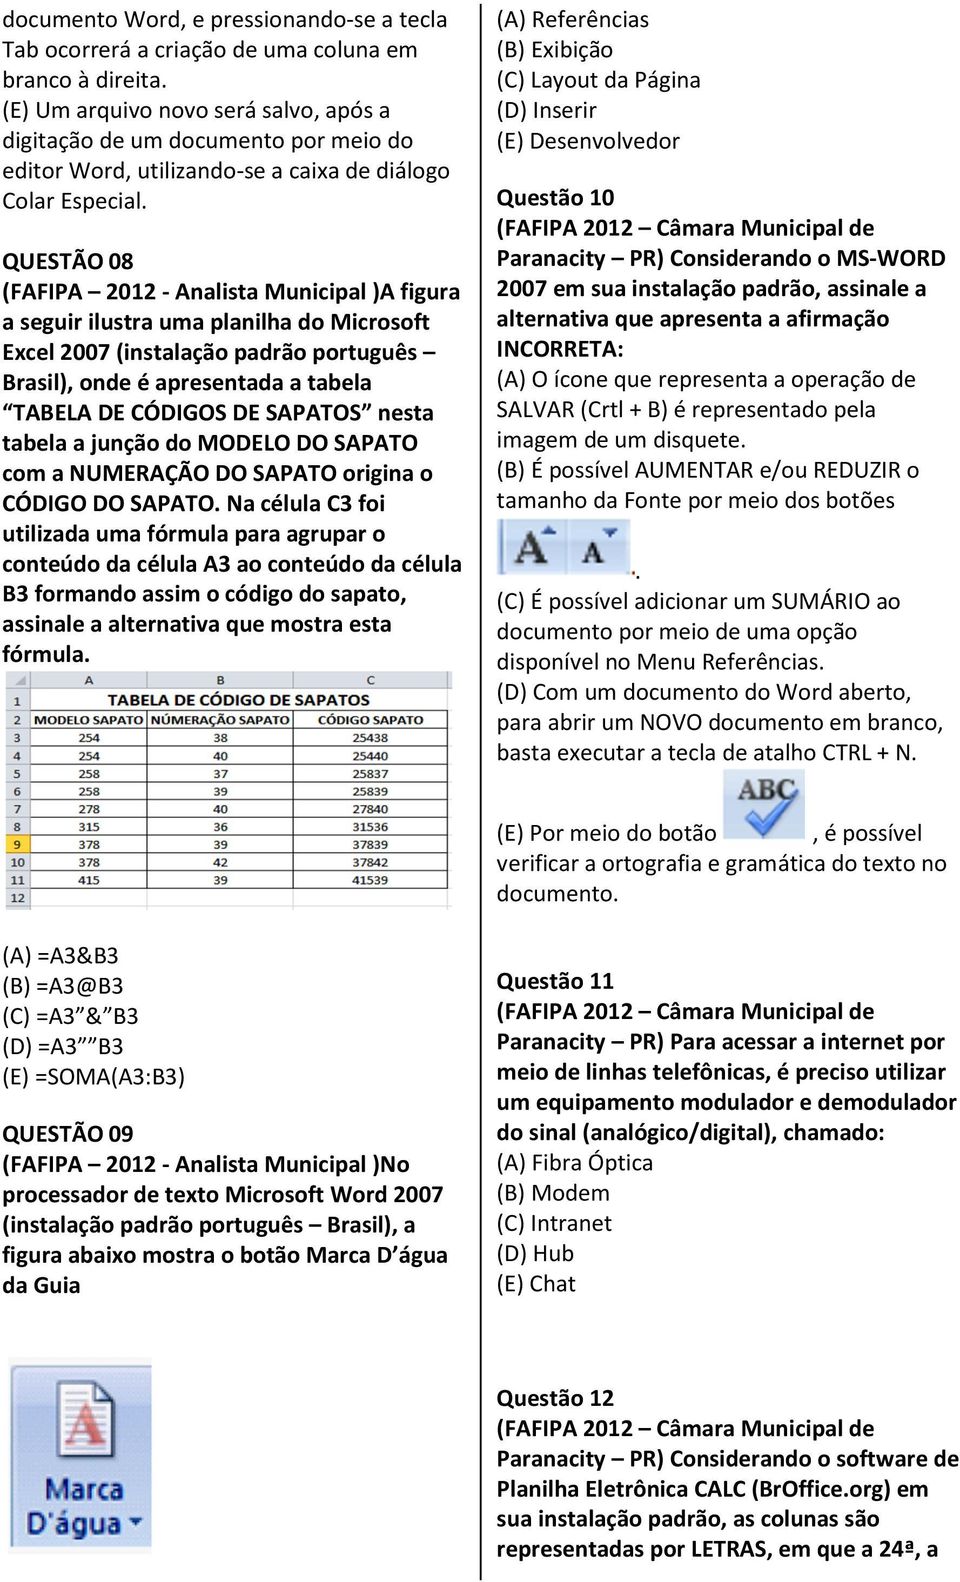 QUESTÃO 08 (FAFIPA 2012 - Analista Municipal )A figura a seguir ilustra uma planilha do Microsoft Excel 2007 (instalação padrão português Brasil), onde é apresentada a tabela TABELA DE CÓDIGOS DE